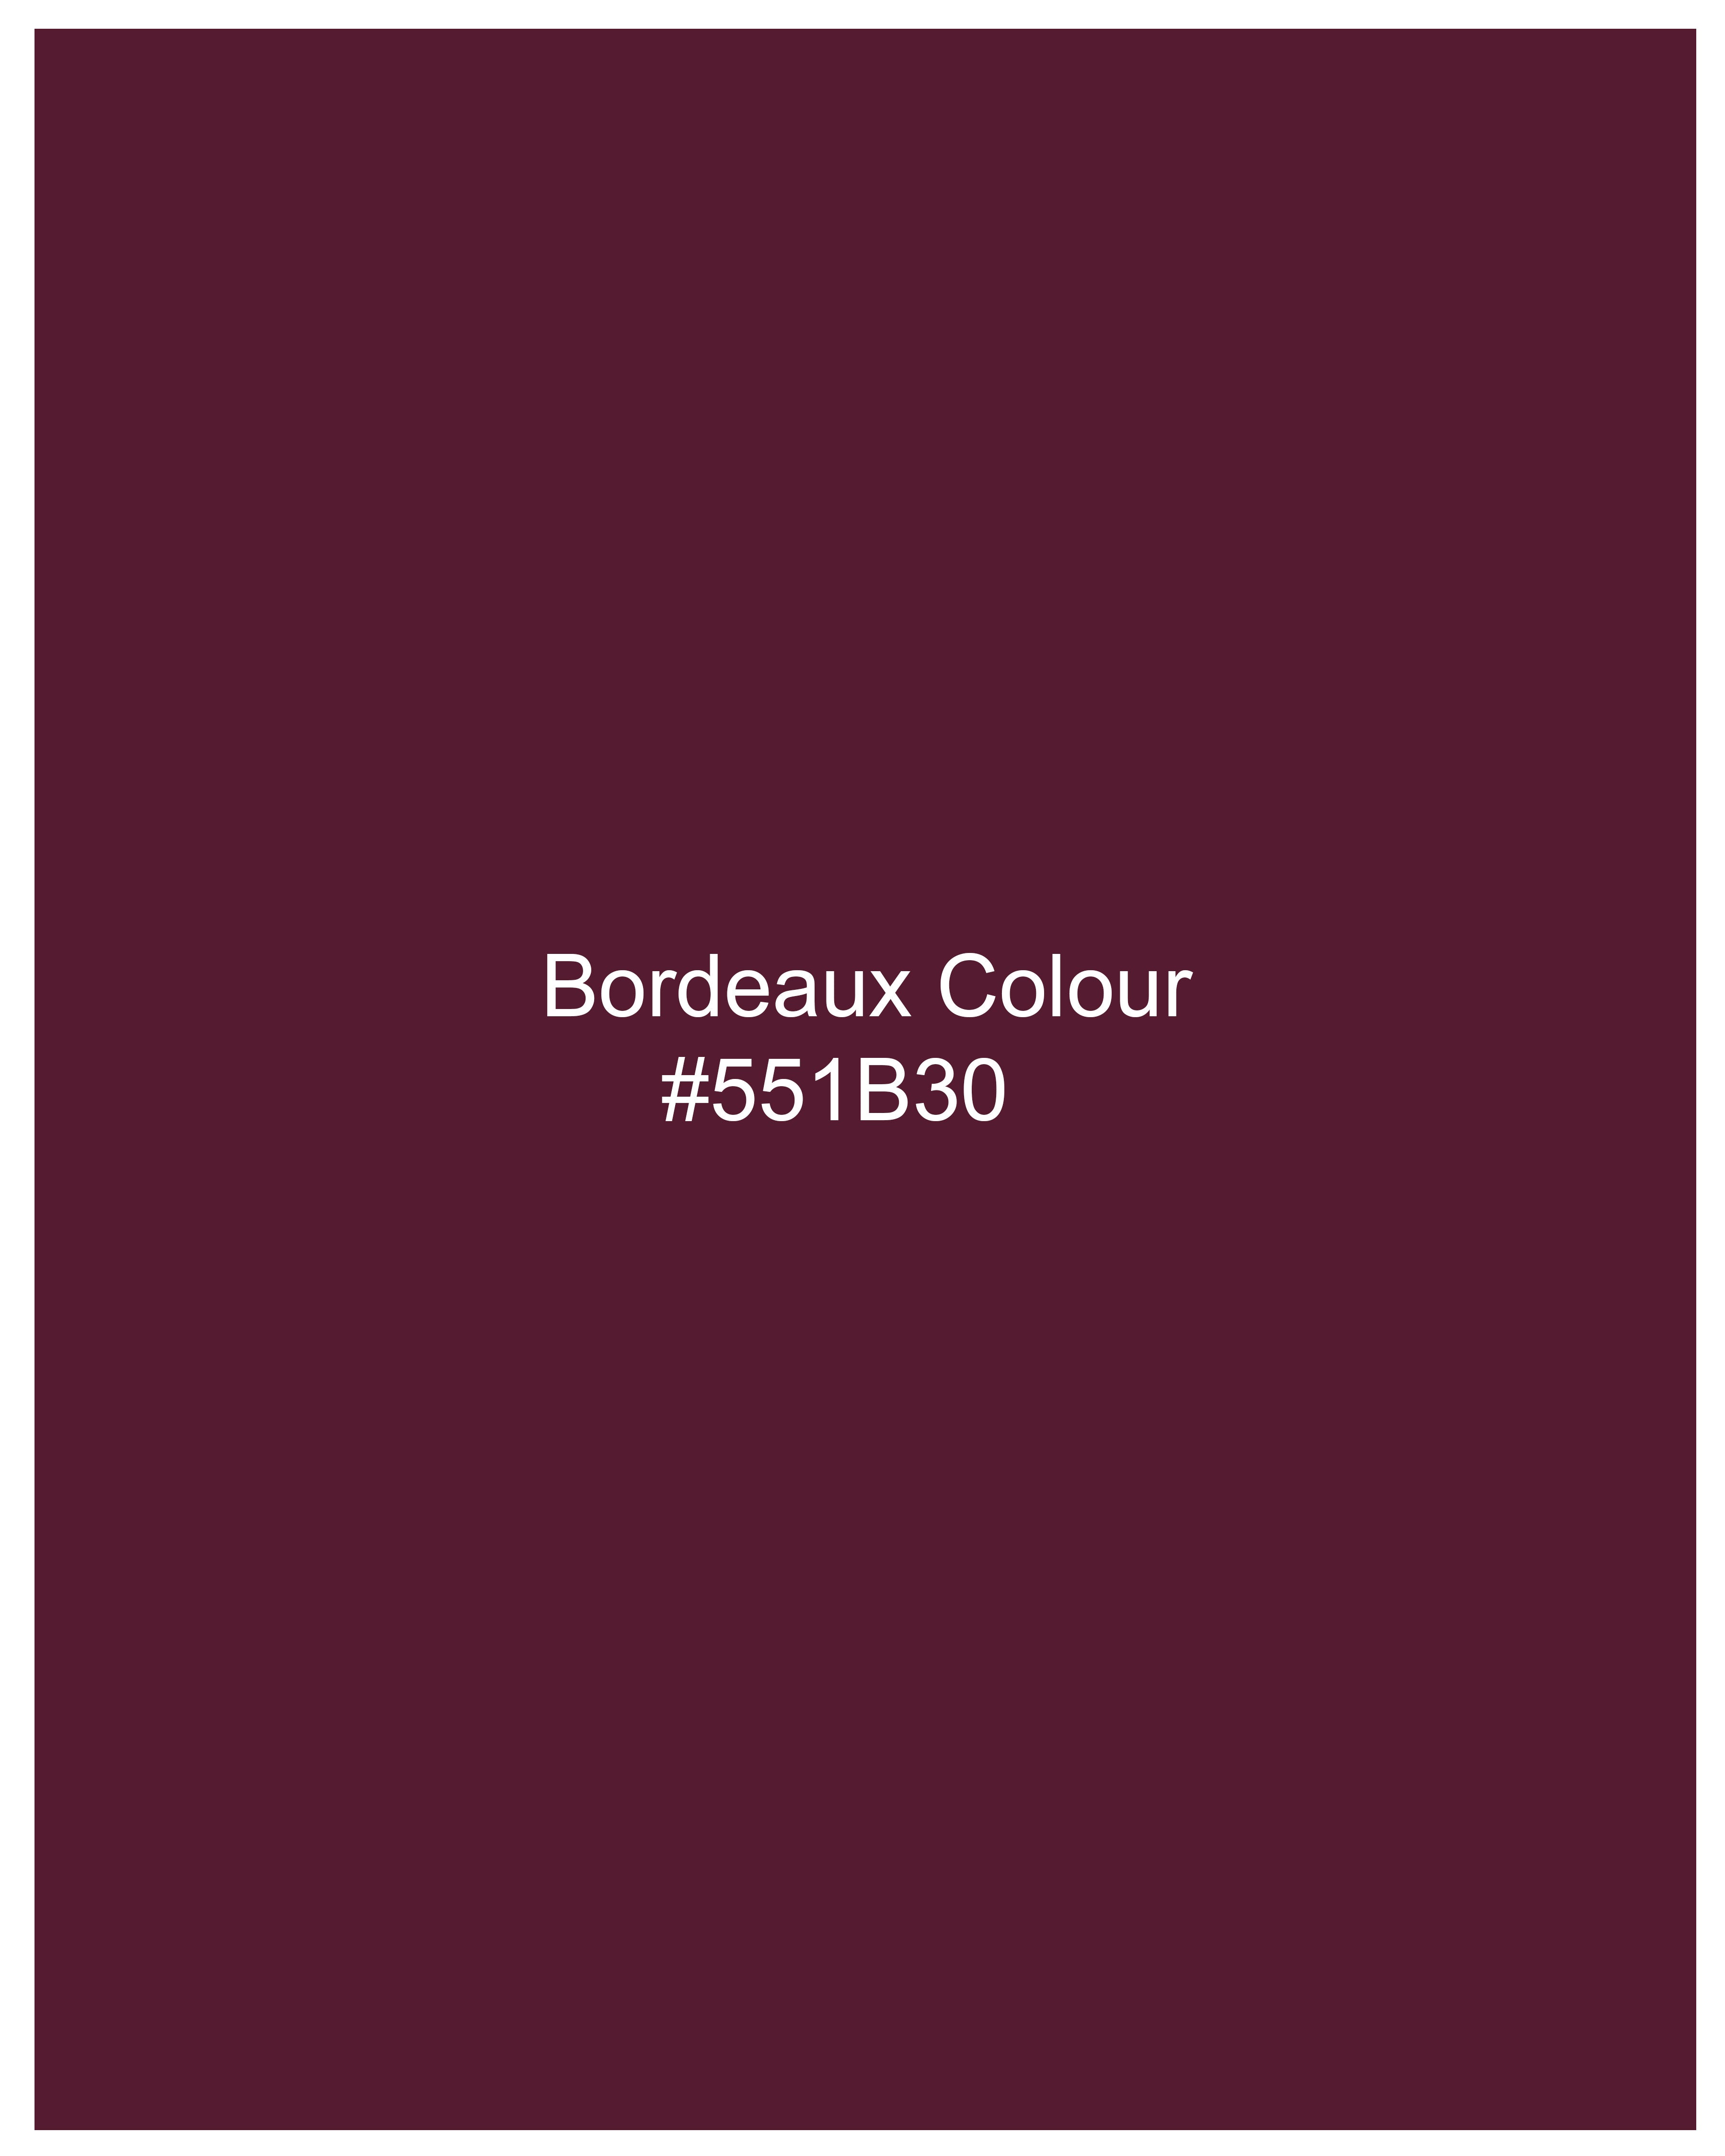 Bordeaux Maroon Premium Cotton Lounge Pants LP188-28, LP188-30, LP188-32, LP188-34, LP188-36, LP188-38, LP188-40, LP188-42, LP188-44